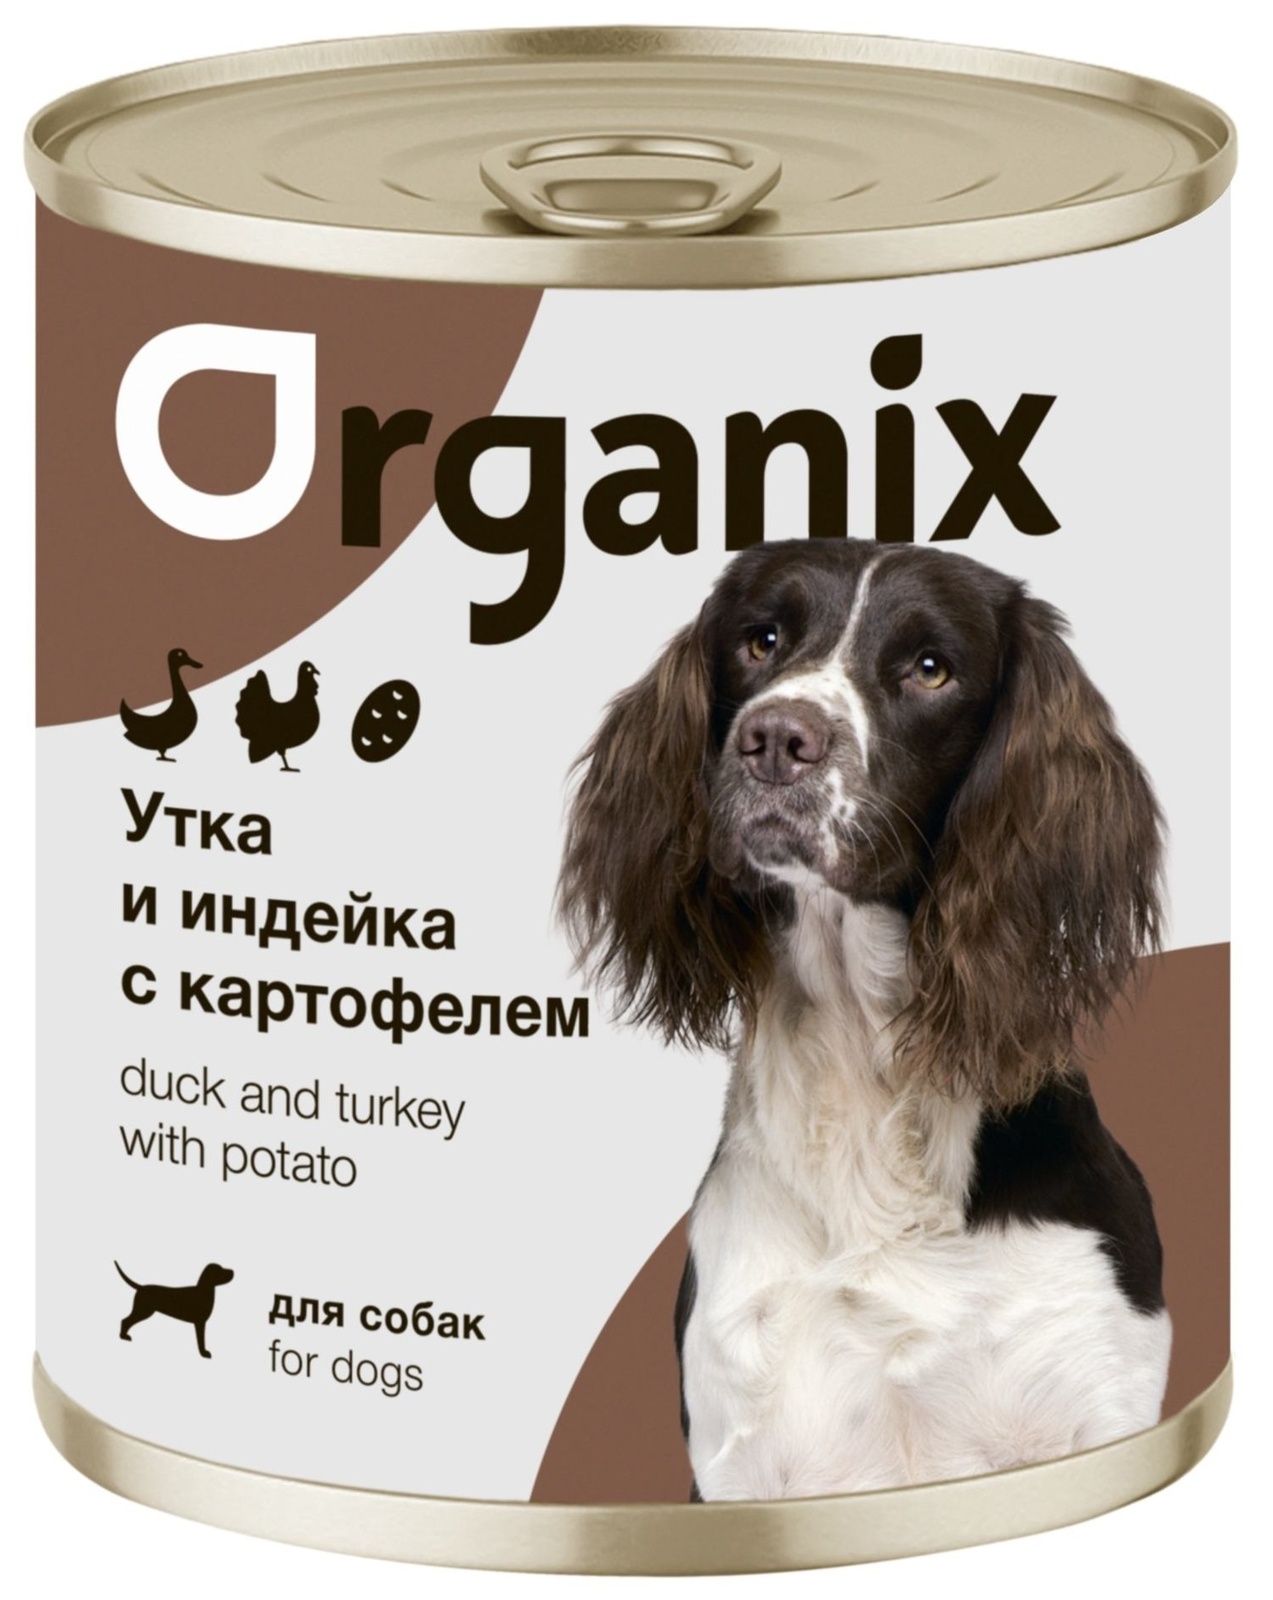 Organix консервы Organix консервы для собак Утка, индейка, картофель (400 г) фото